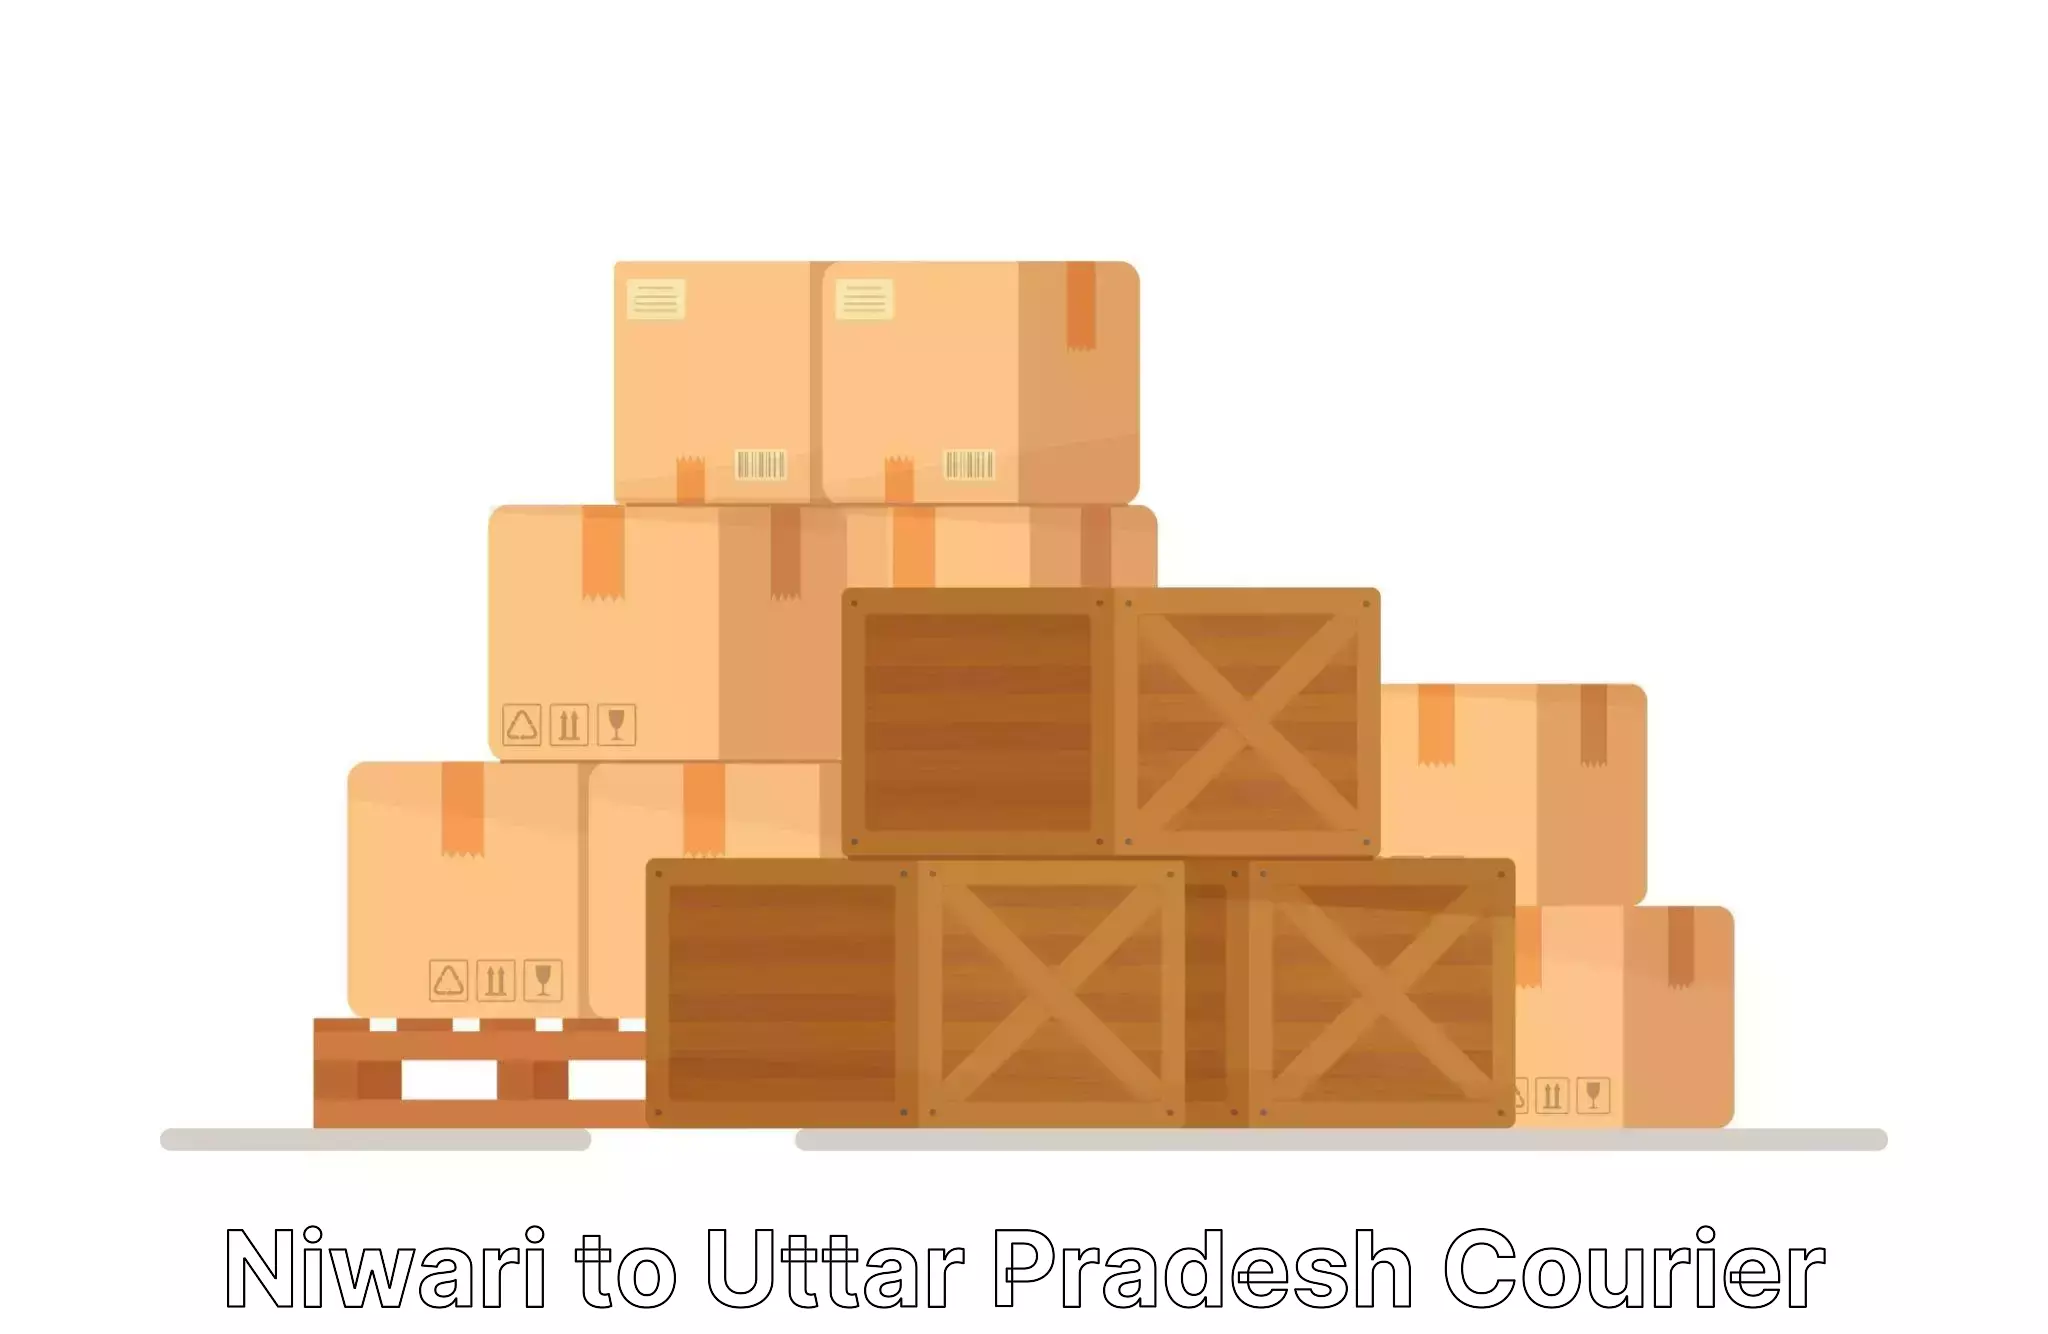 Home furniture relocation Niwari to Varanasi